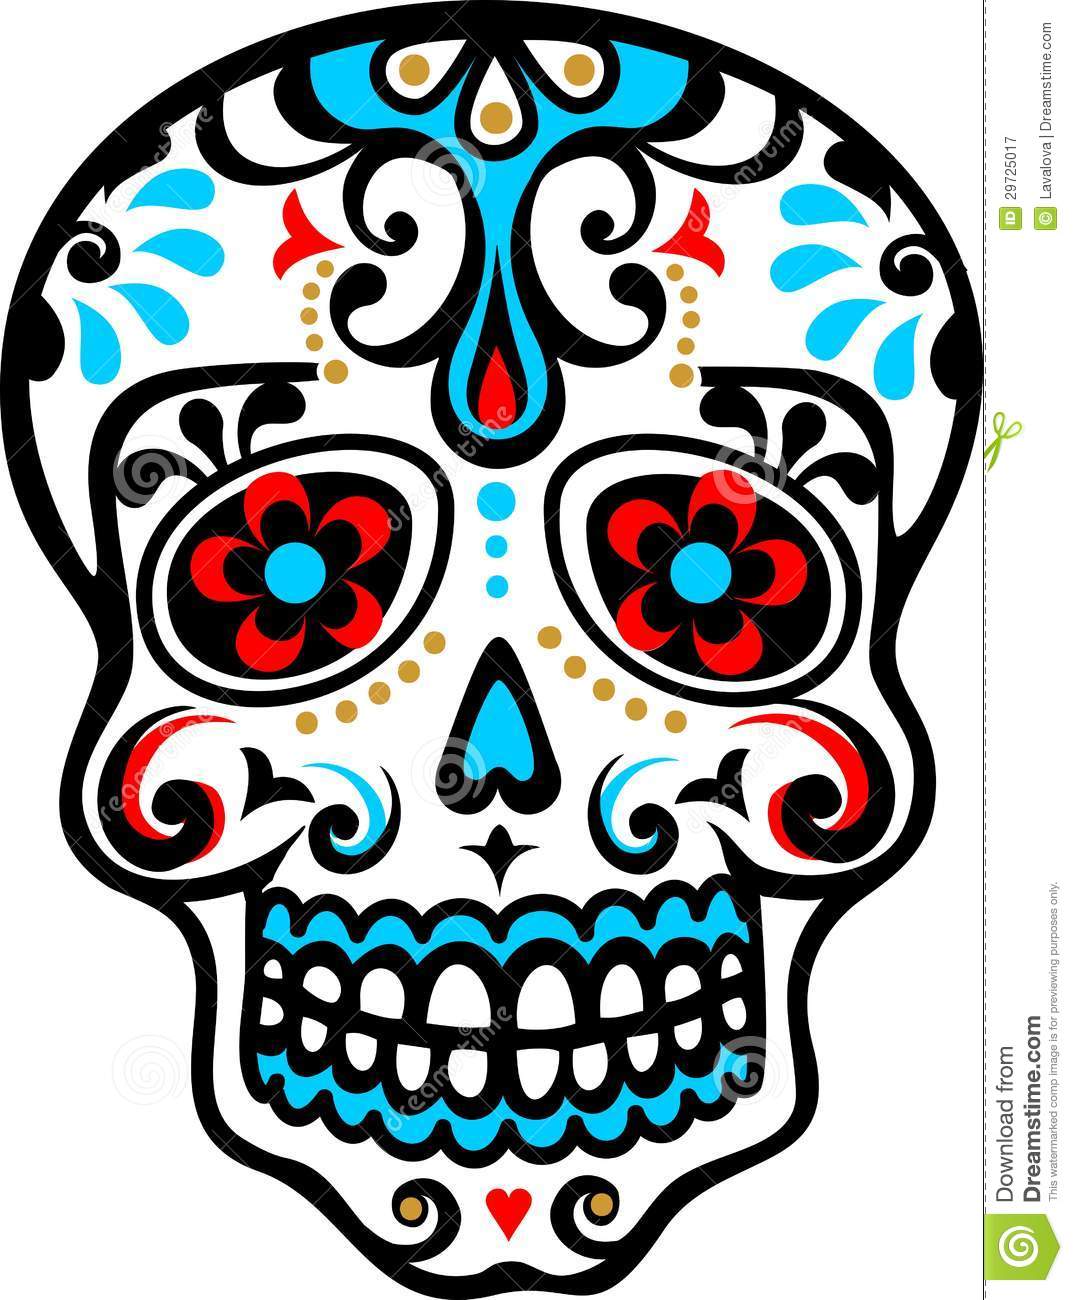 Mexican Skull   El Dia De Los Muertos   Day Of The Dead   Vector Image